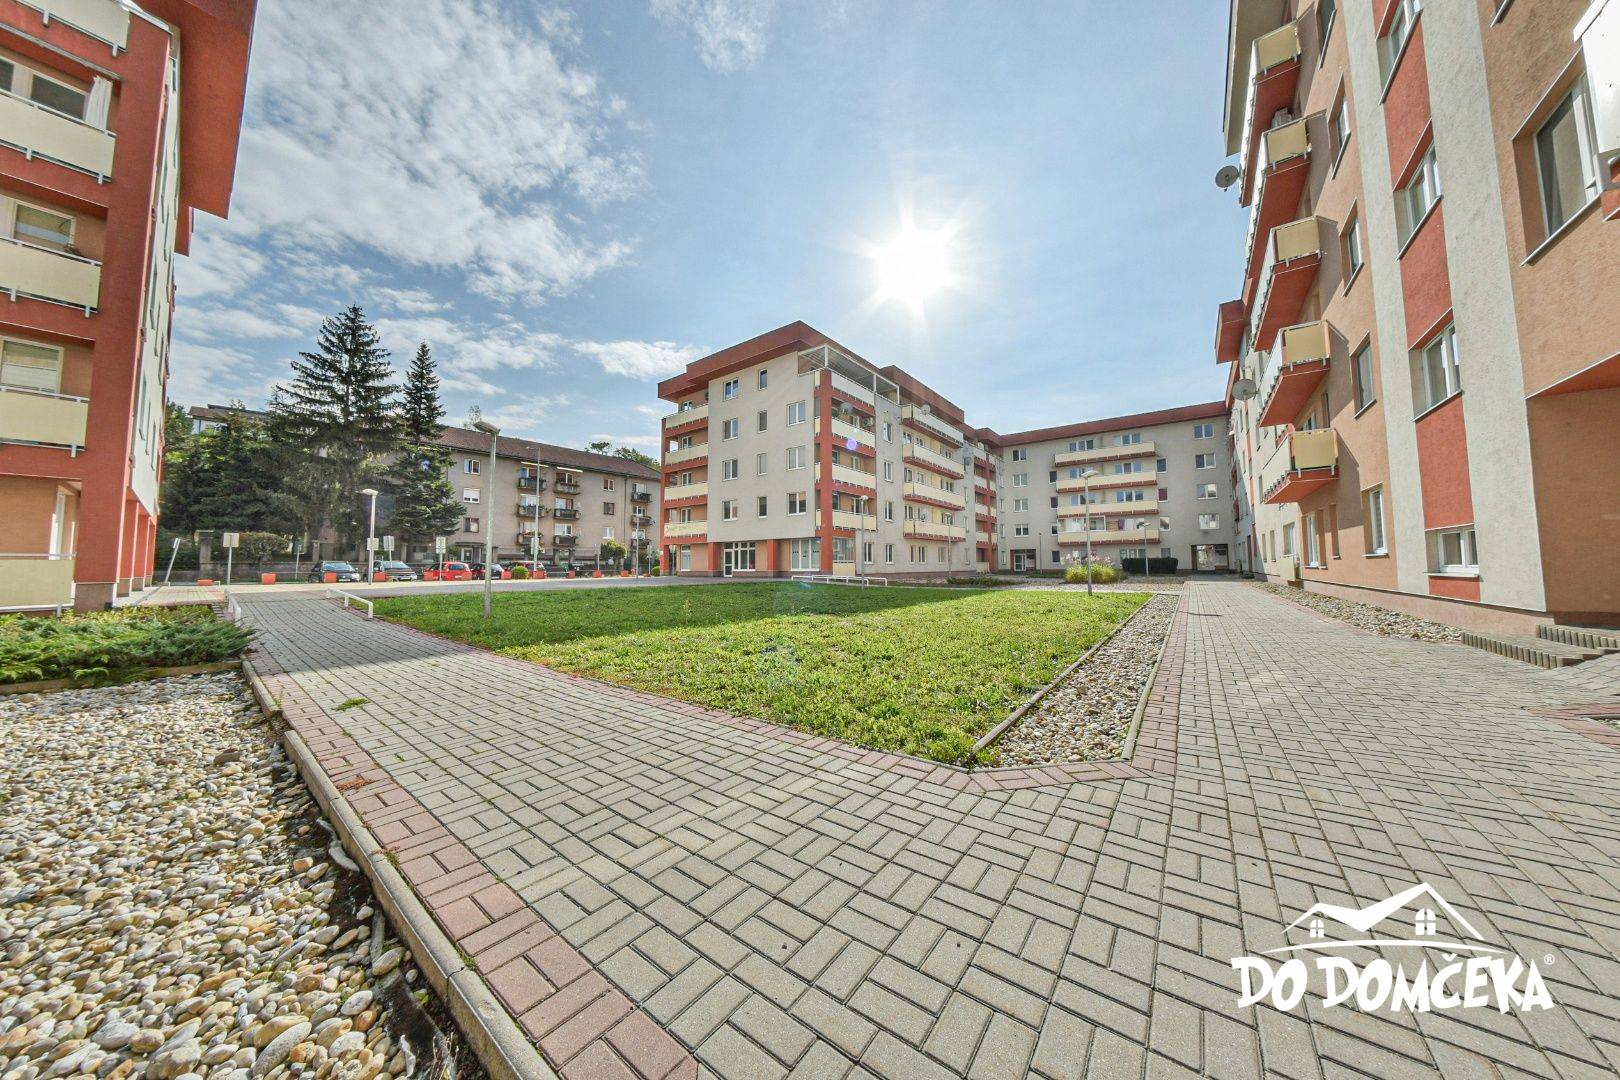 PREDANÉ Priestranný 2-izbový byt v centre mesta Banská Bystrica, ulica Bakossova